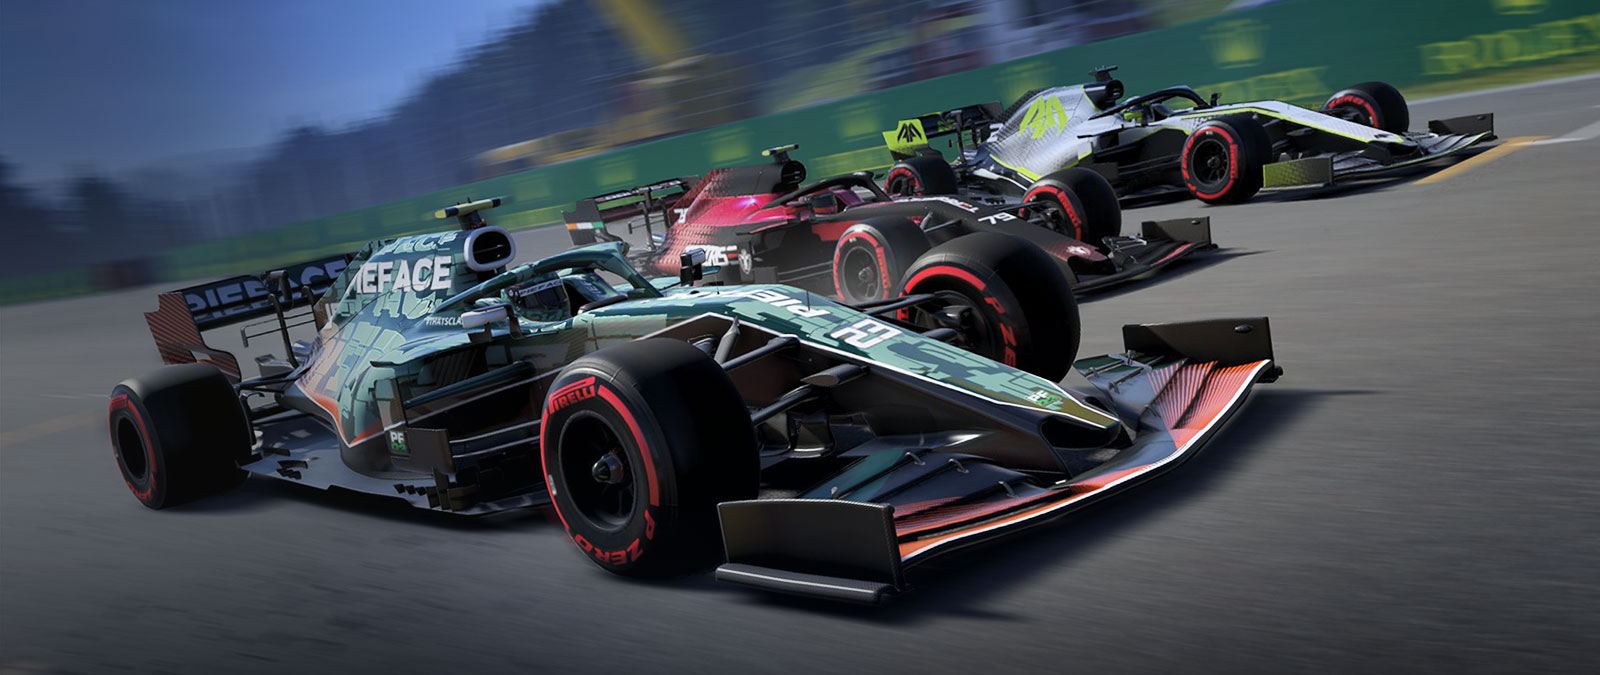 Tres coches de F1 aceleran por la pista uno al lado del otro.